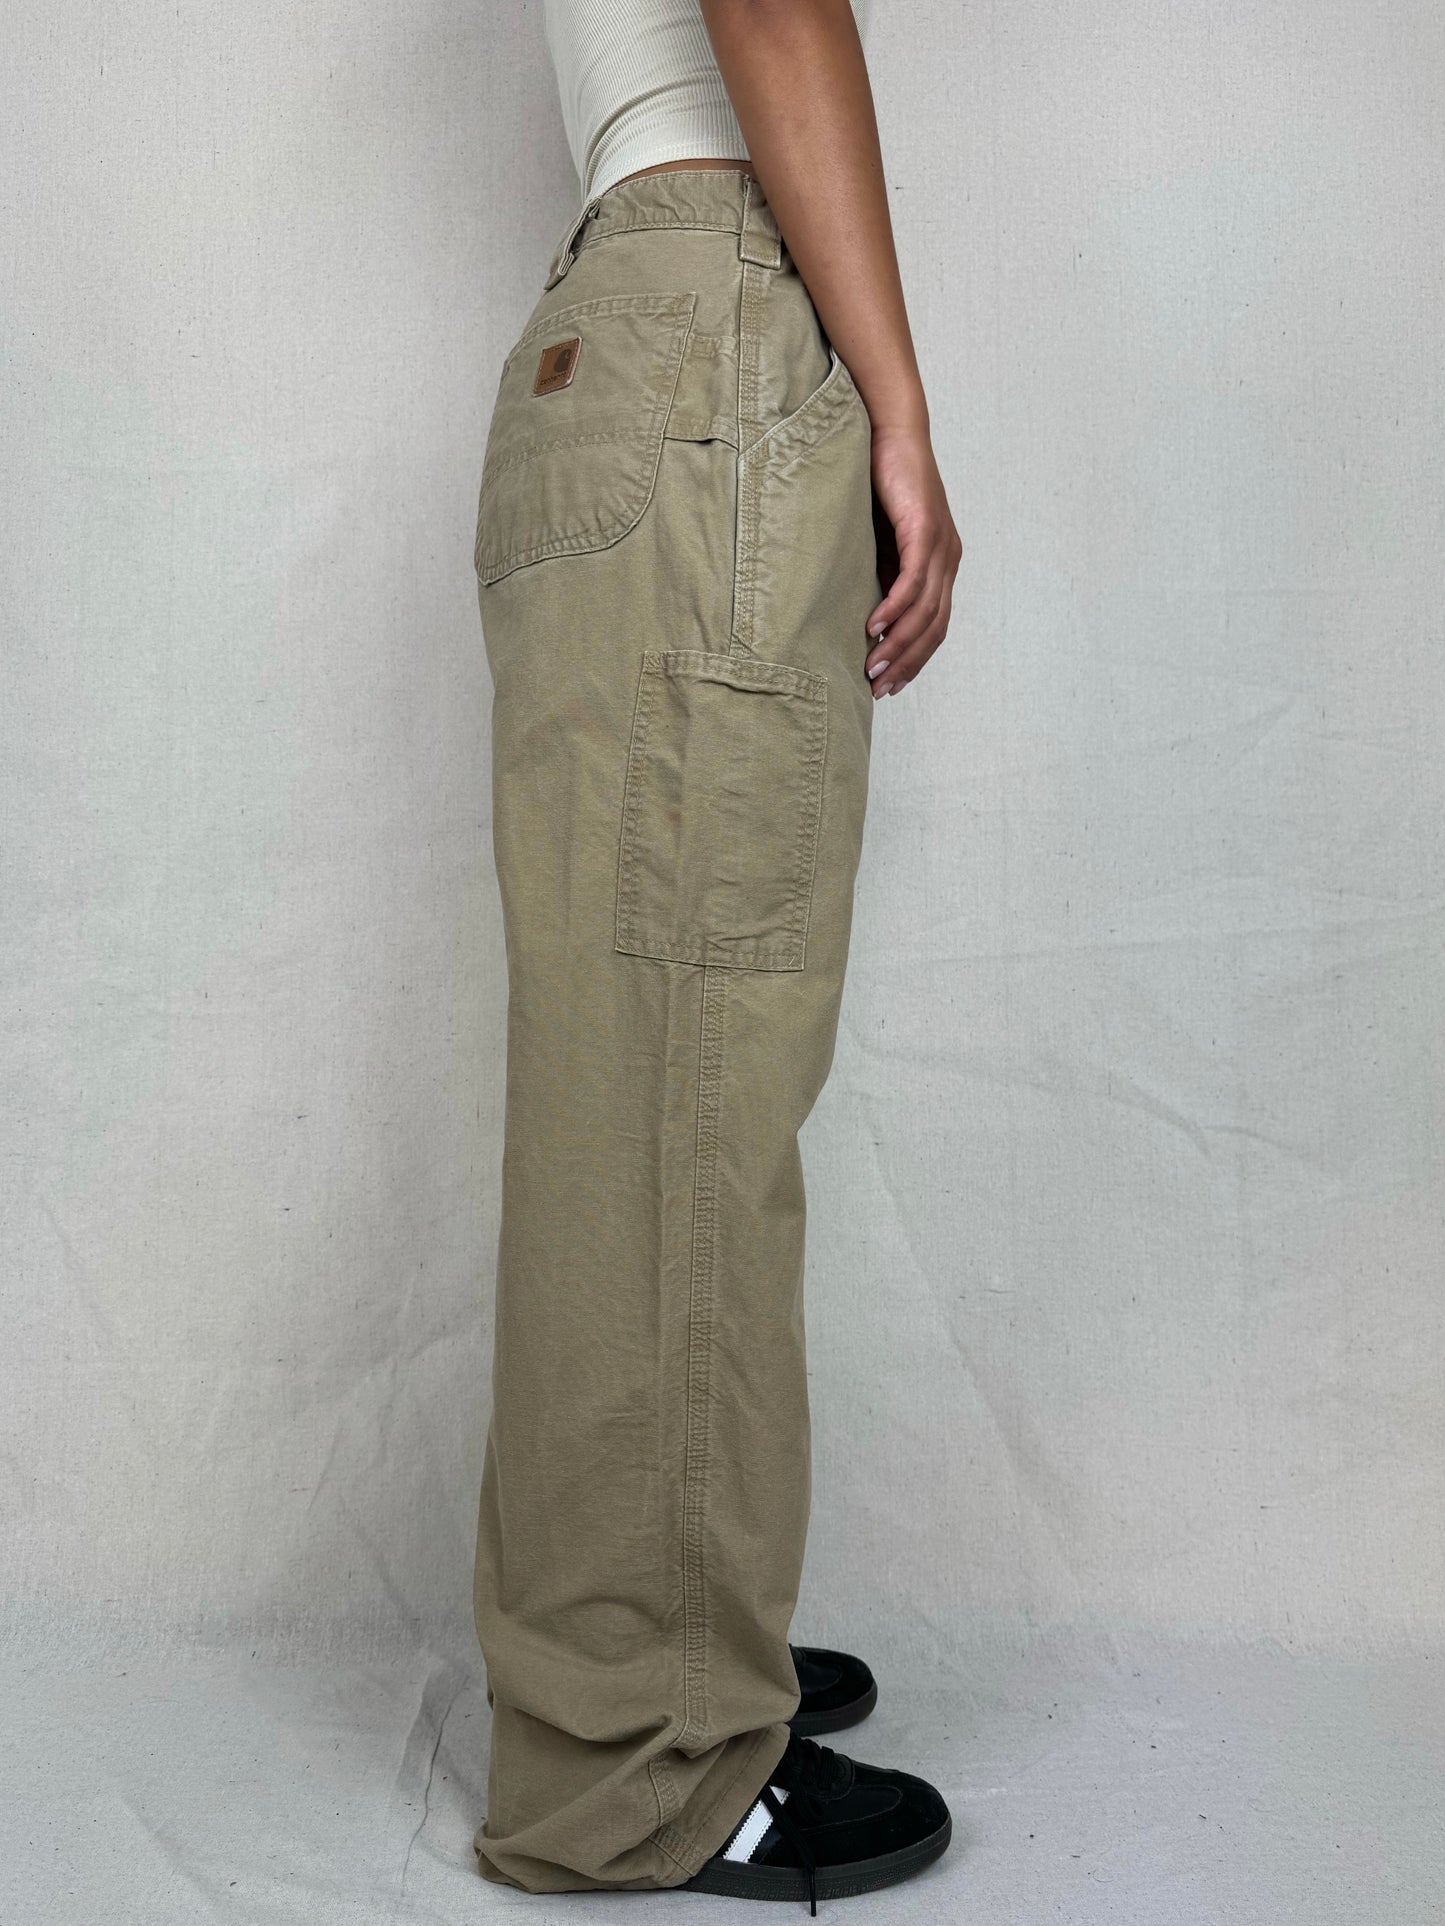 90's Carhartt Vintage Carpenter Pants Size 32x31